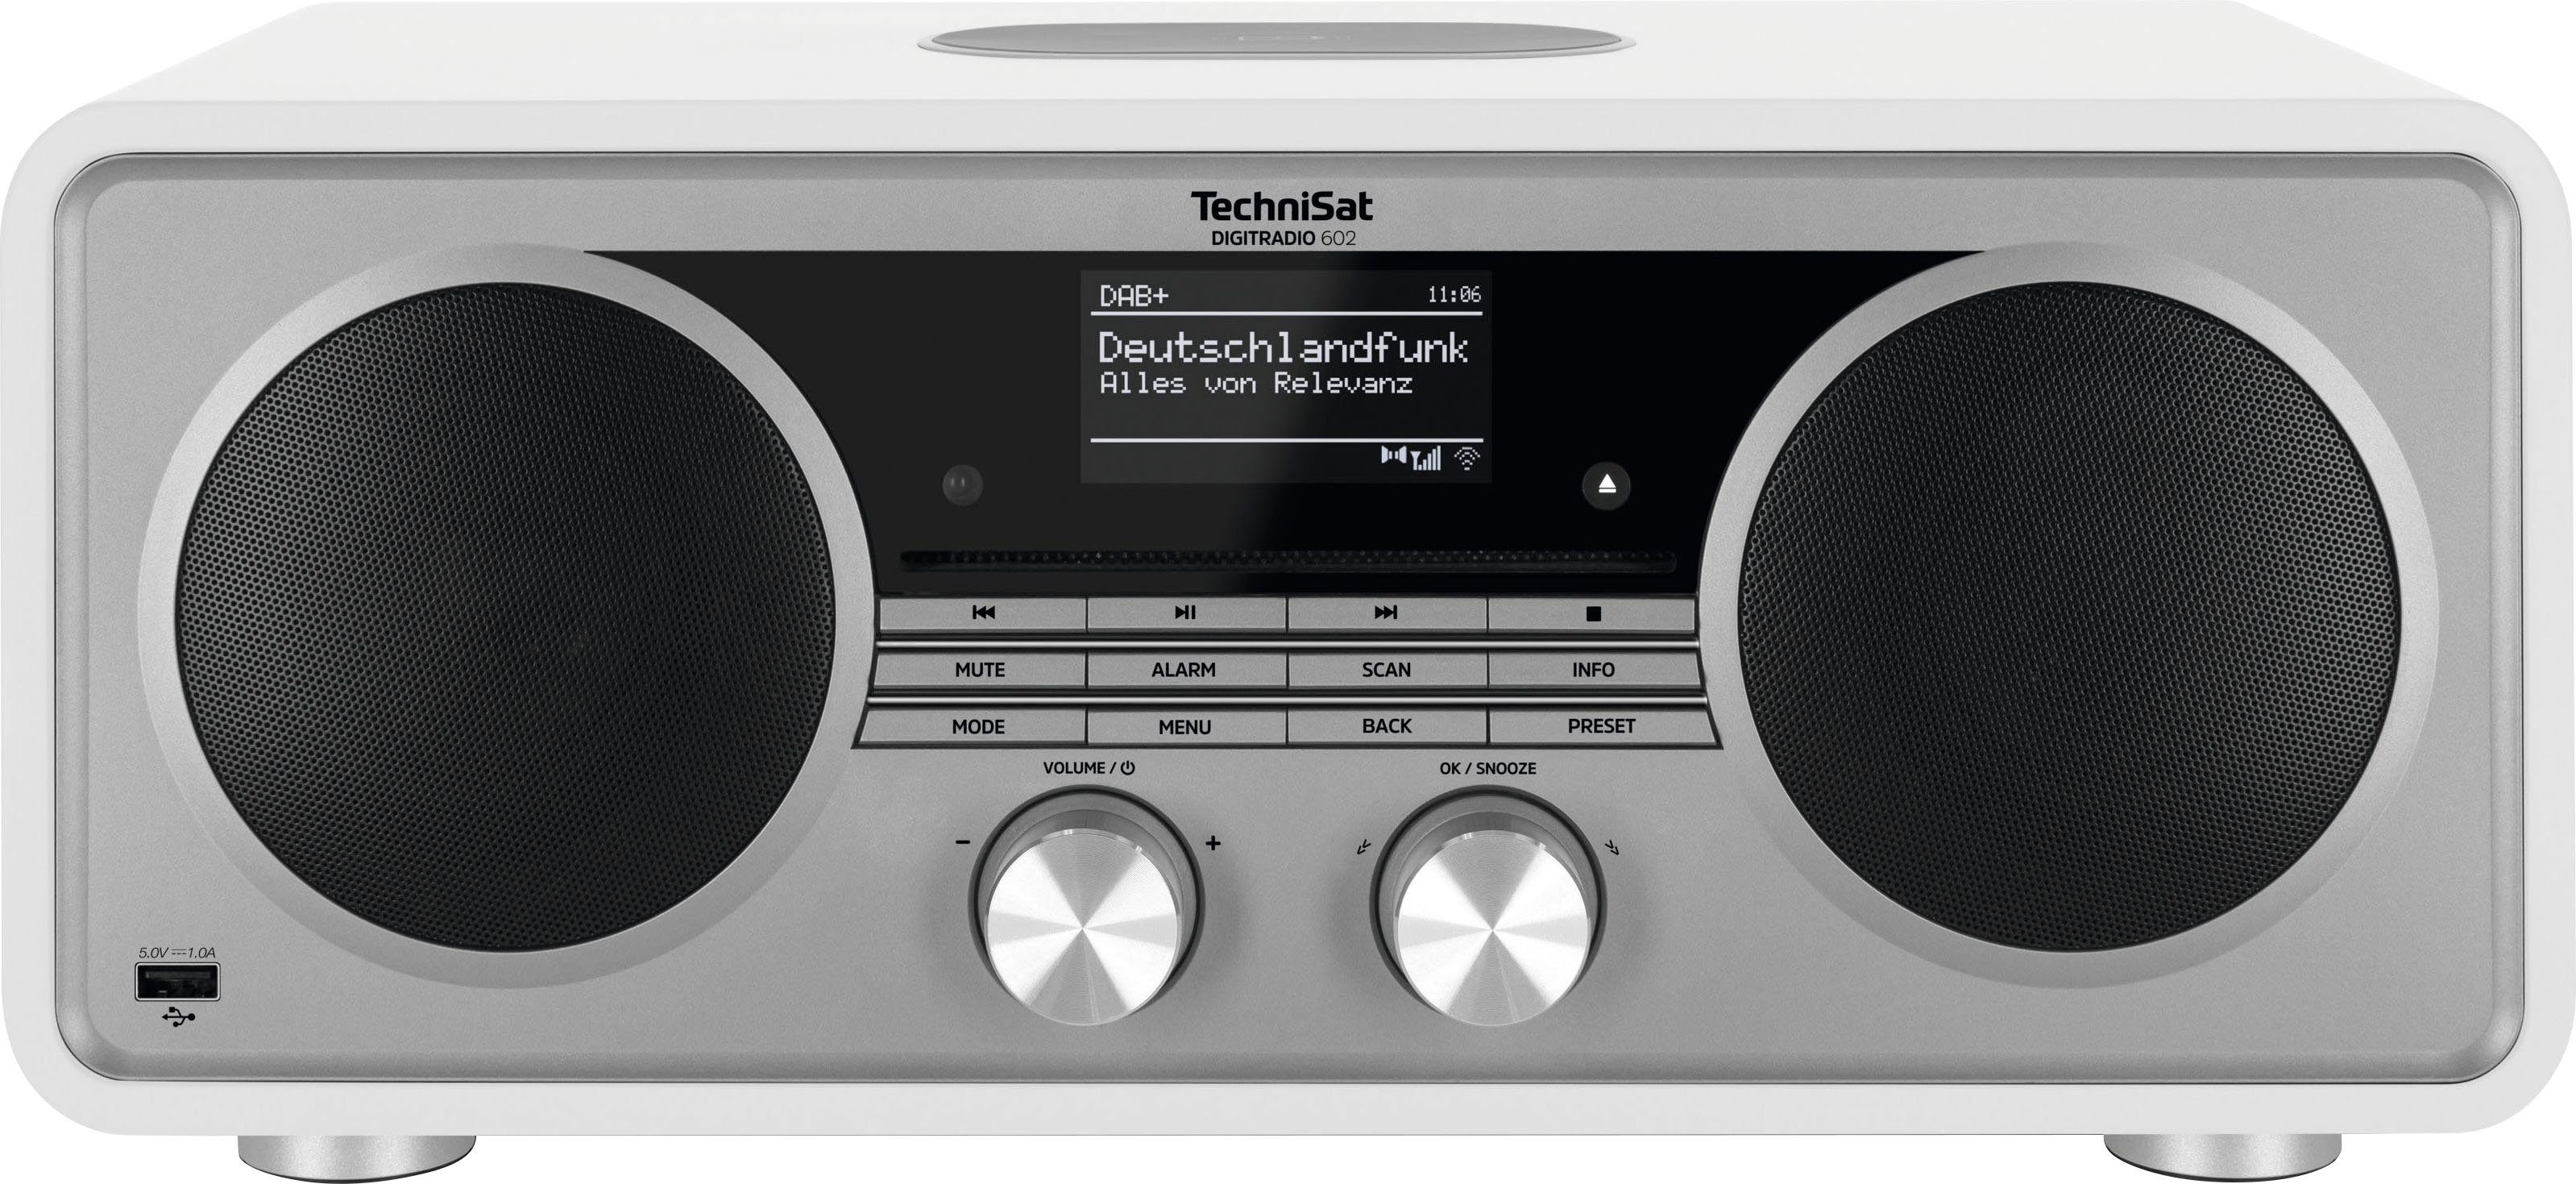 Stereoanlage, (Digitalradio 70 TechniSat 602 W, mit DIGITRADIO (DAB), RDS, Weiß/Silber UKW CD-Player) Internet-Radio